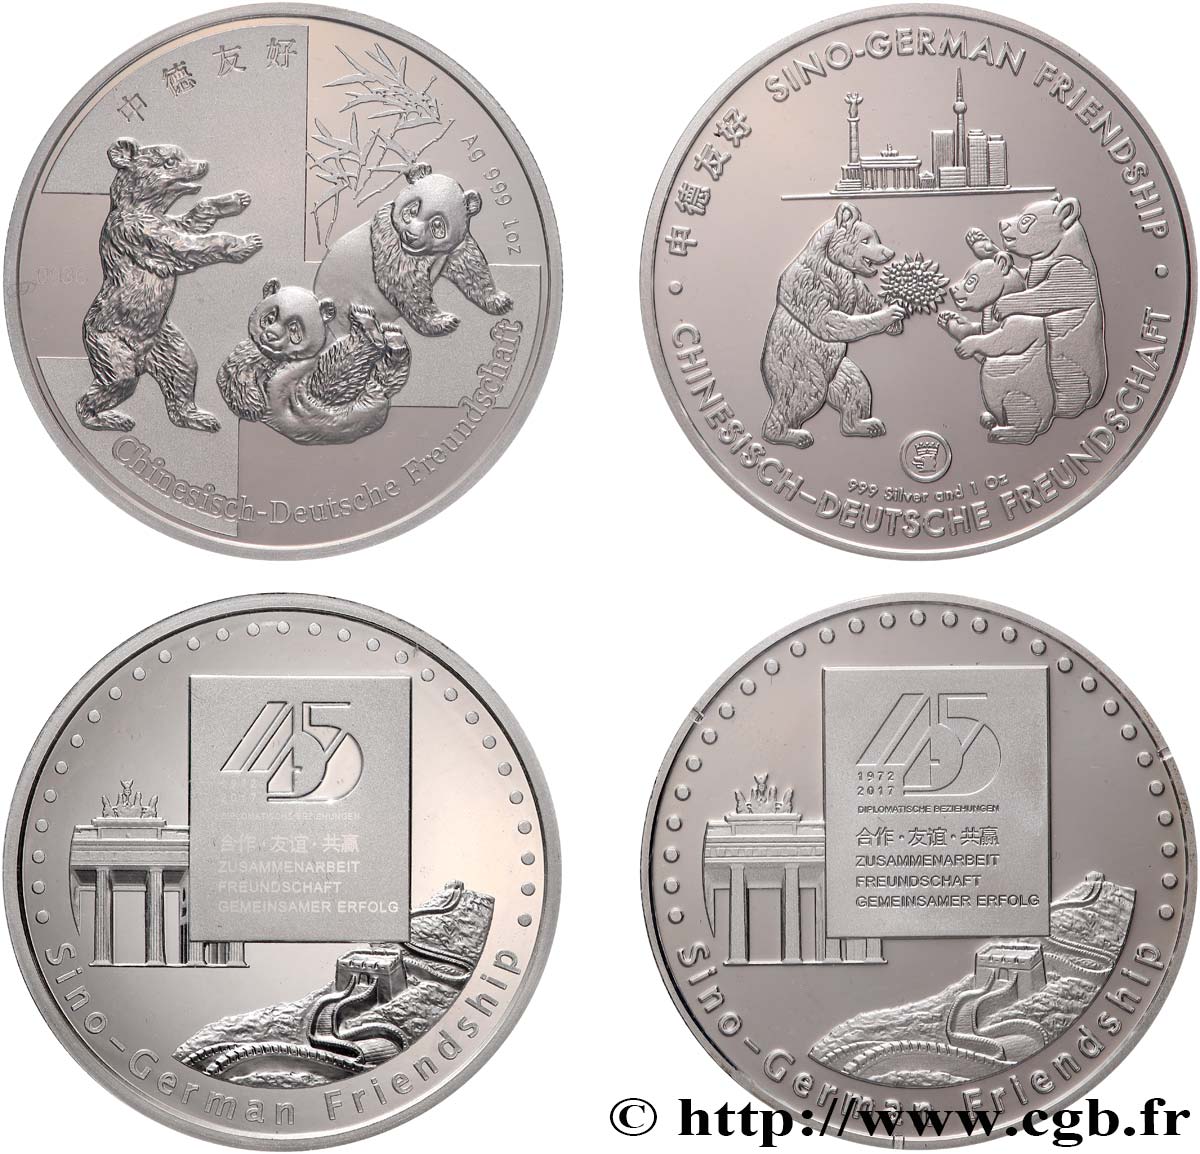 GERMANIA Médailles commémoratives, 45e anniversaire de l’amitié sino-allemande FDC